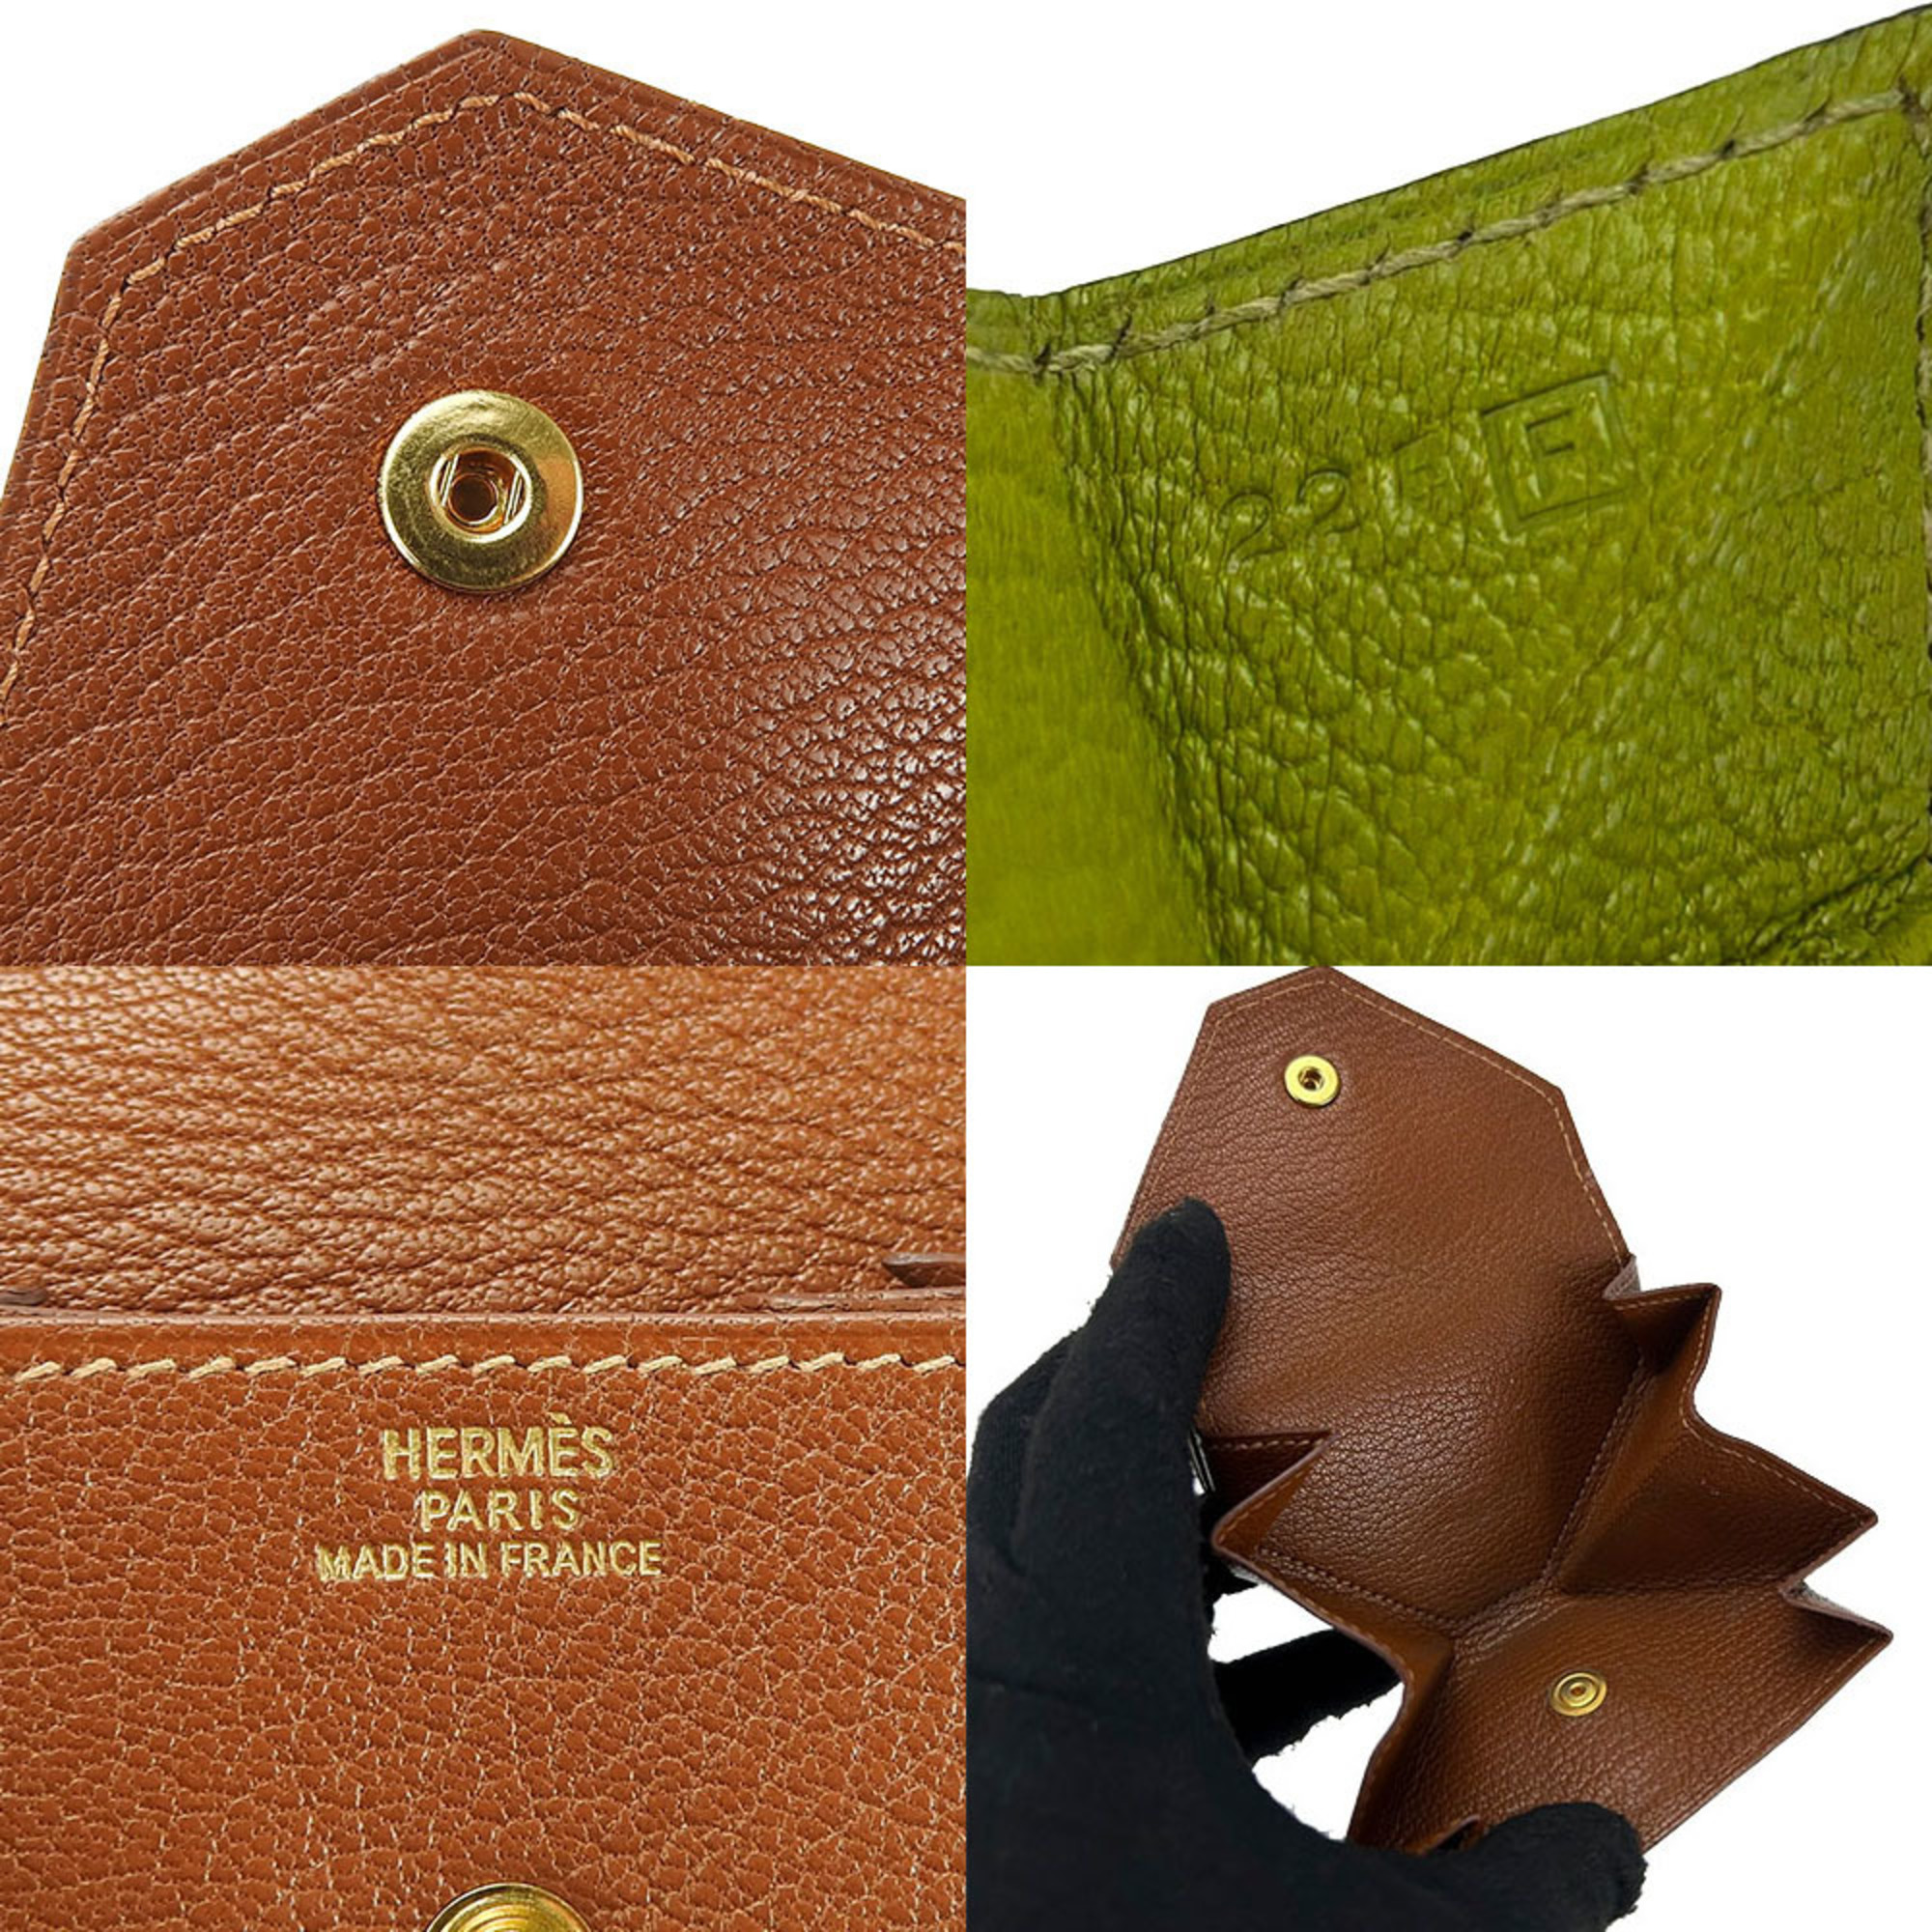 Hermes Coin Case Purse Le Van Quatre □F Engraved Double Face Chevre Leather Green Brown Accessory Women Men HERMES 9527